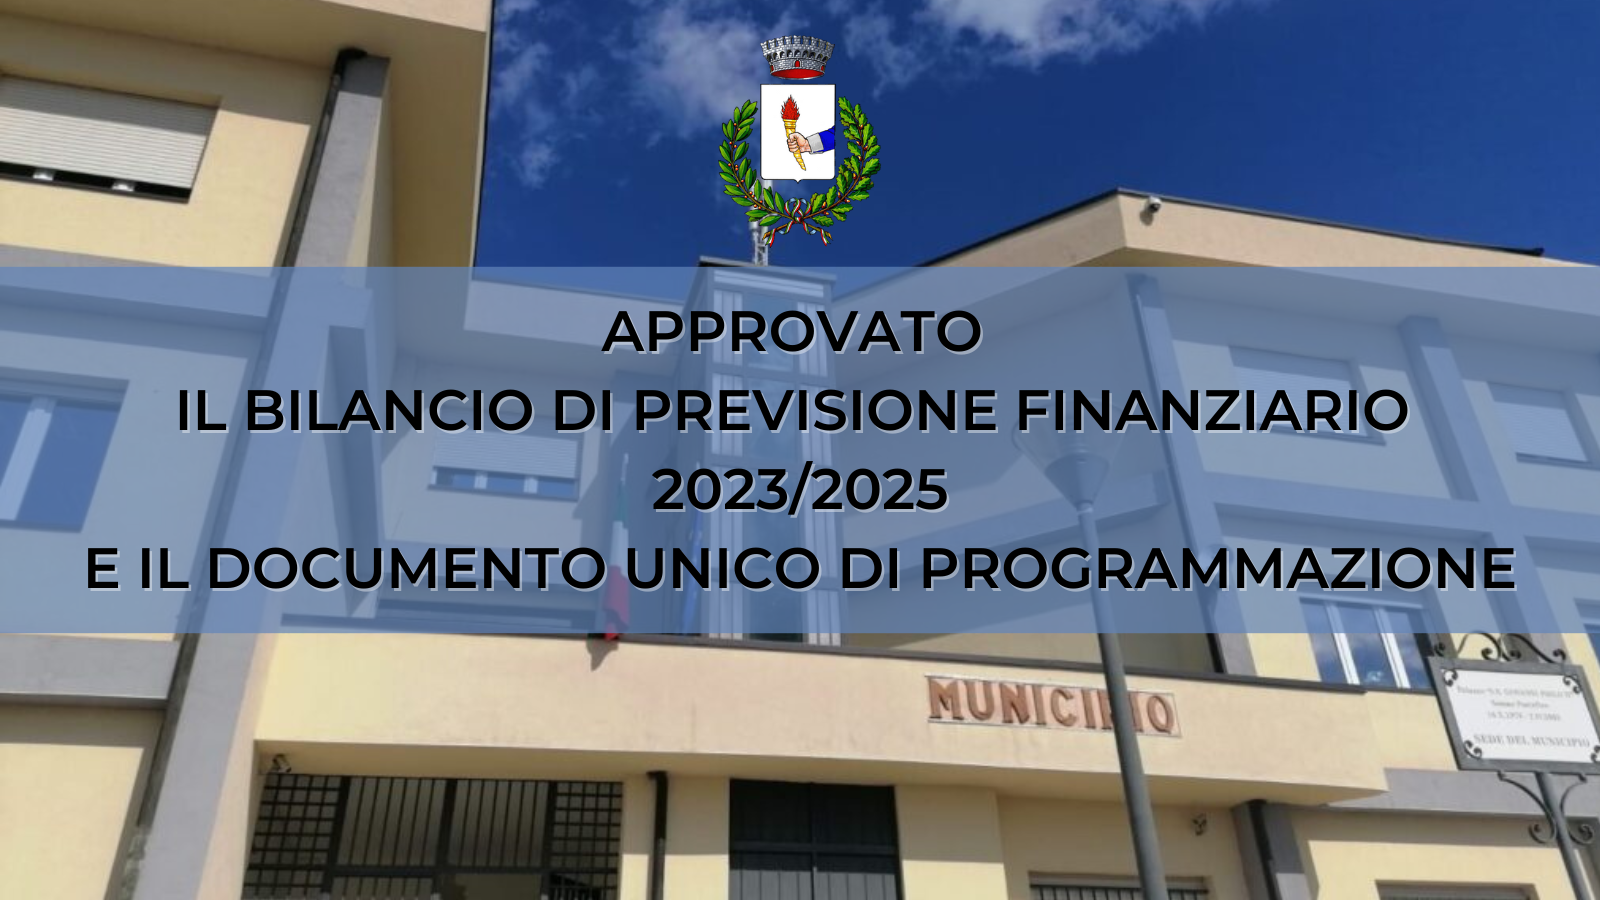 Comune di Faicchio: approvato all’unanimità il Bilancio di Previsione Finanziario 2023/2025 e il Documento Unico di Programmazione